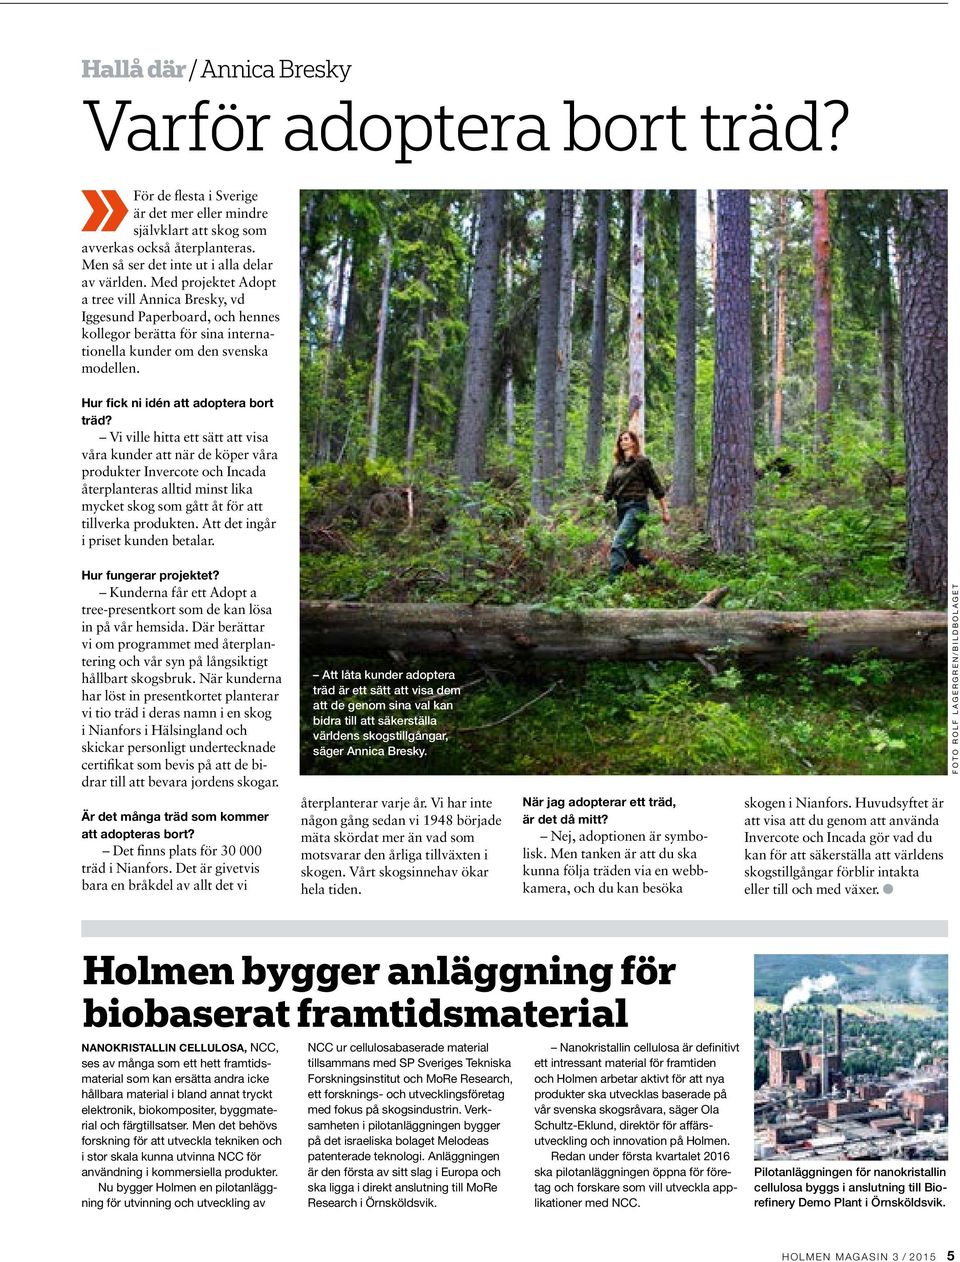 Med projektet Adopt a tree vill Annica Bresky, vd Iggesund Paperboard, och hennes kollegor berätta för sina internationella kunder om den svenska modellen. Hur fick ni idén att adoptera bort träd?